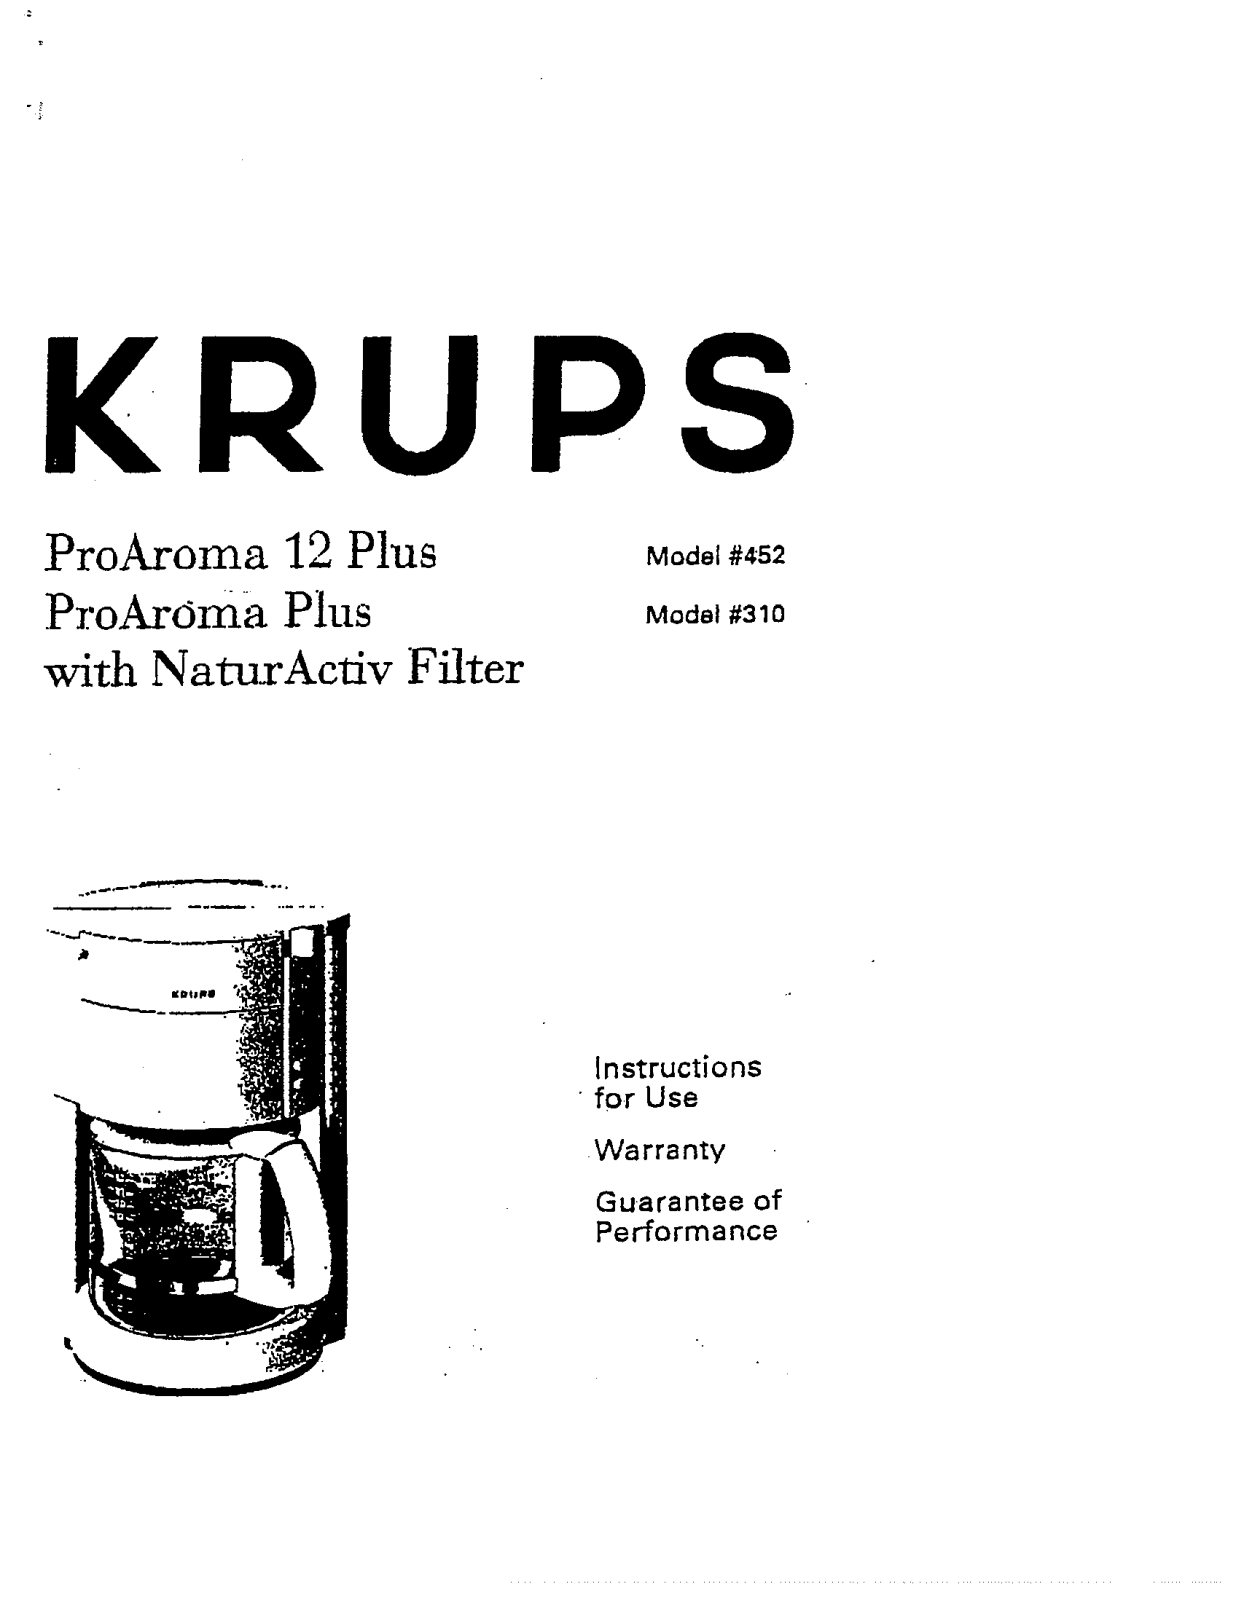 Krups 452, 310, PROAROMA 12 PLUS, PROAROMA PLUS Manual